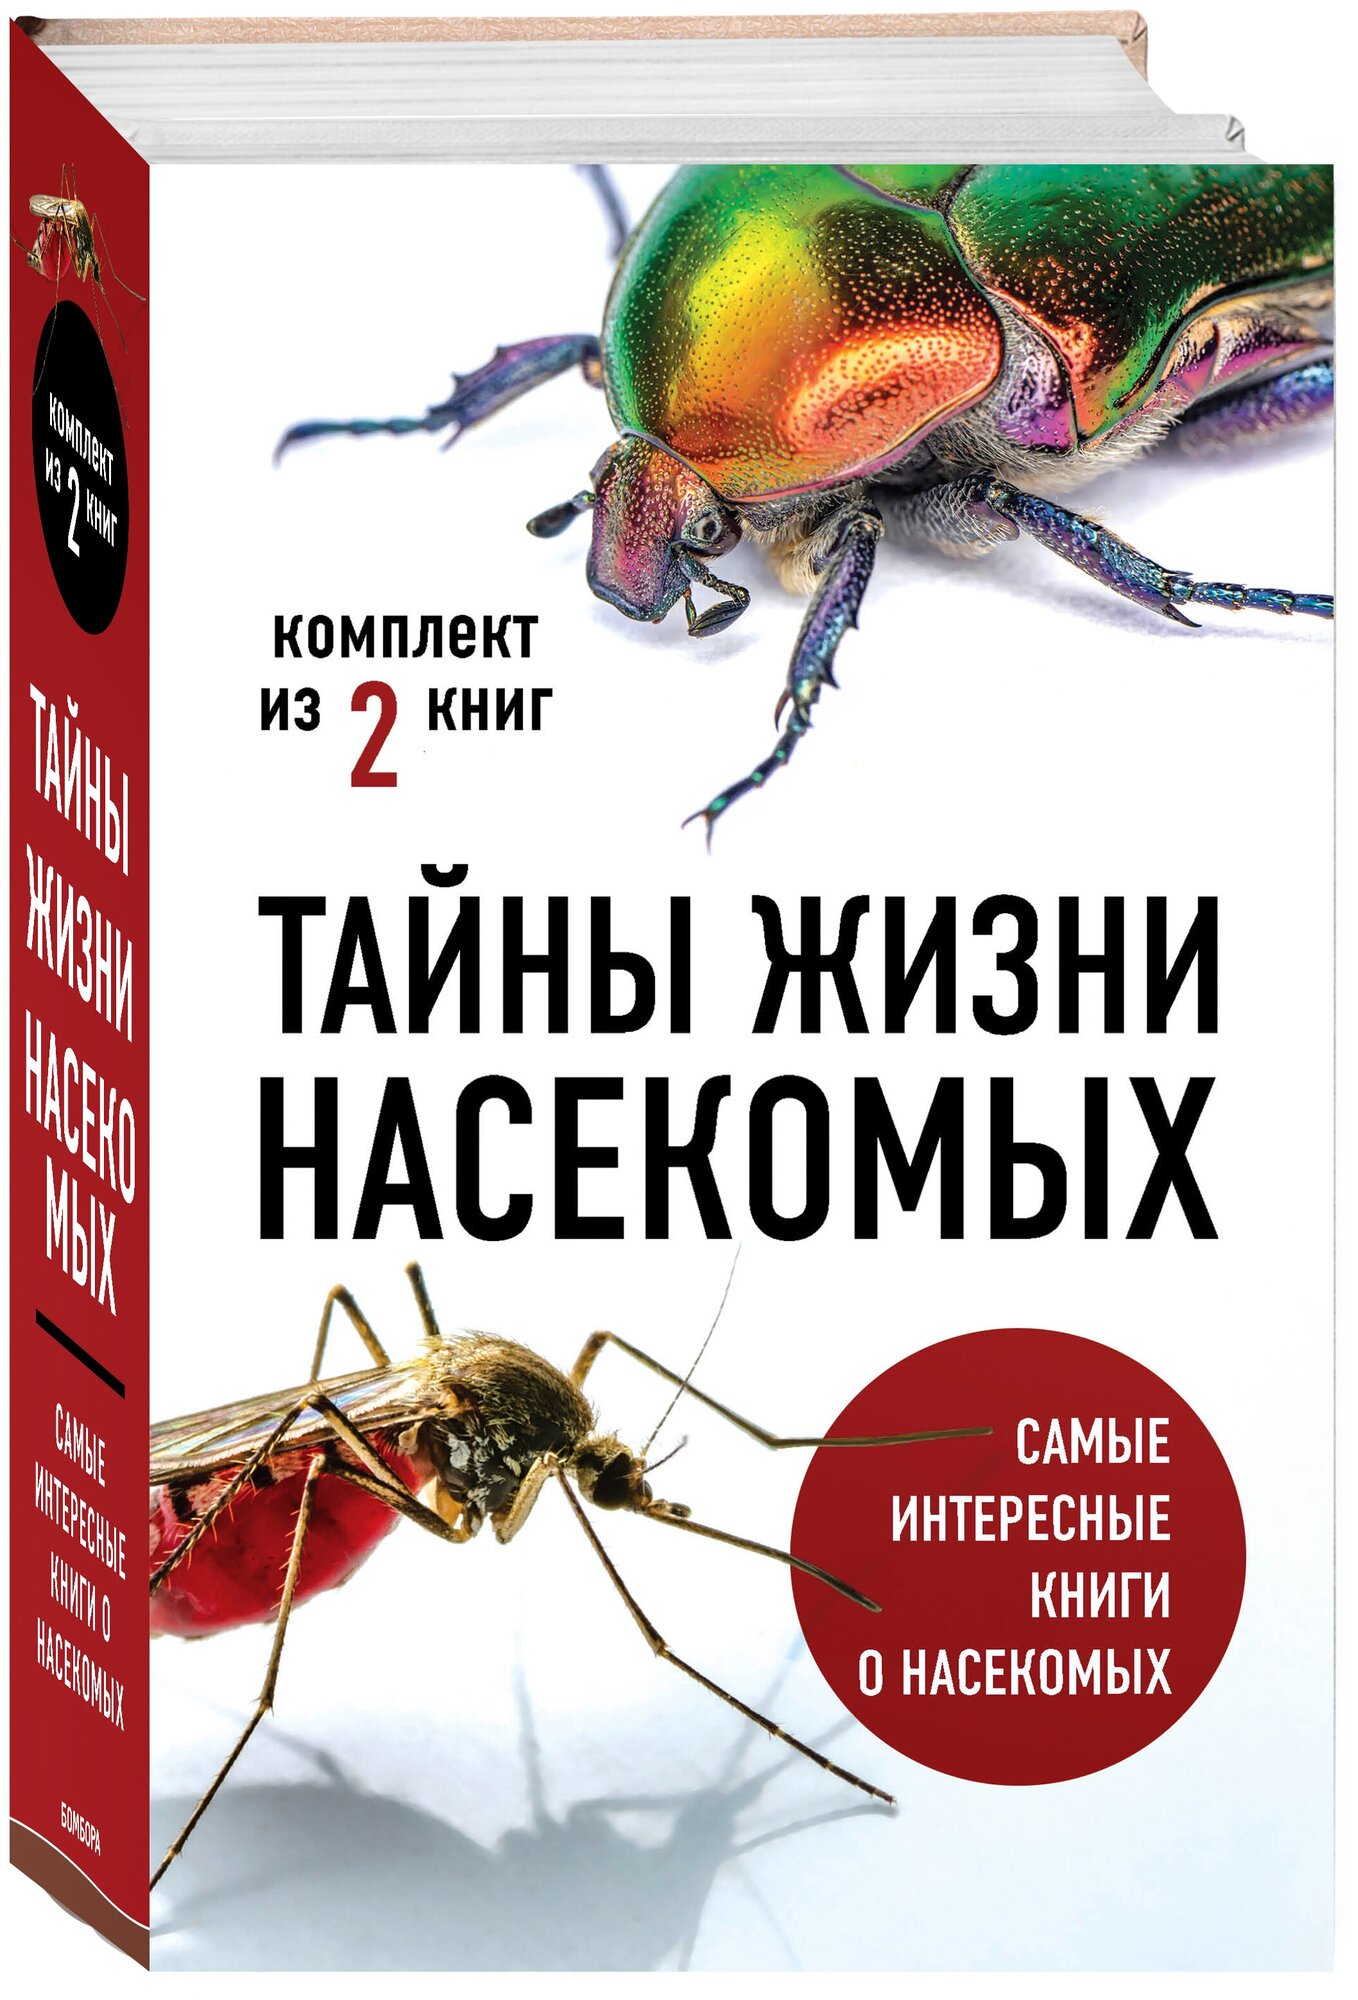 Тайны жизни насекомых (бандероль) - фото №1